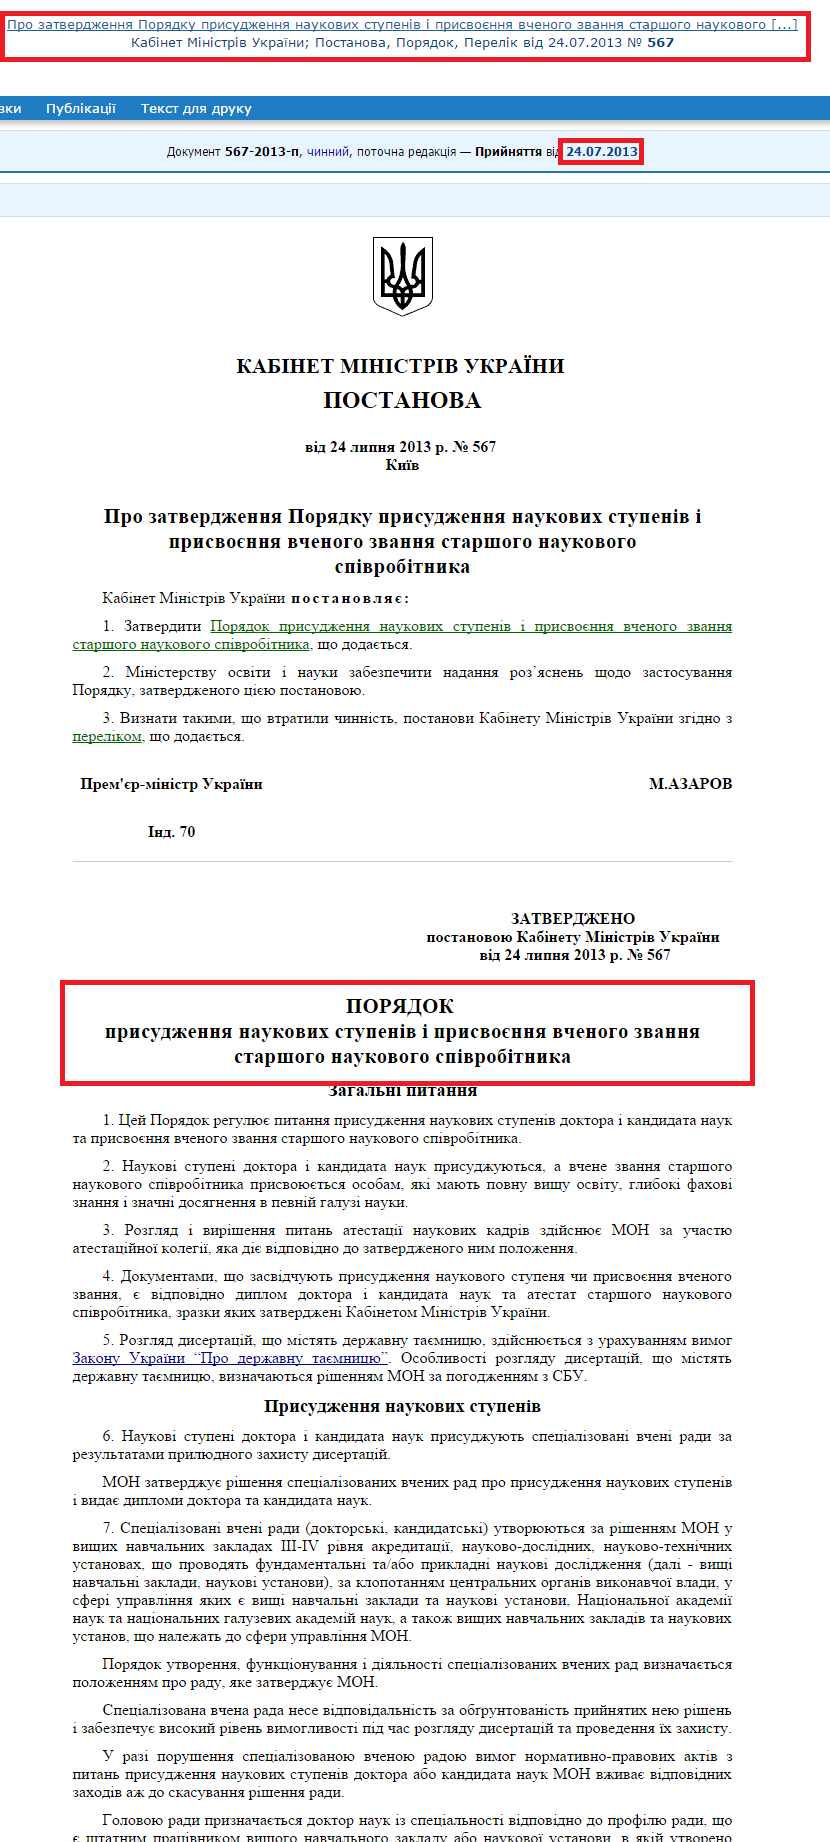 http://zakon4.rada.gov.ua/laws/show/567-2013-%D0%BF